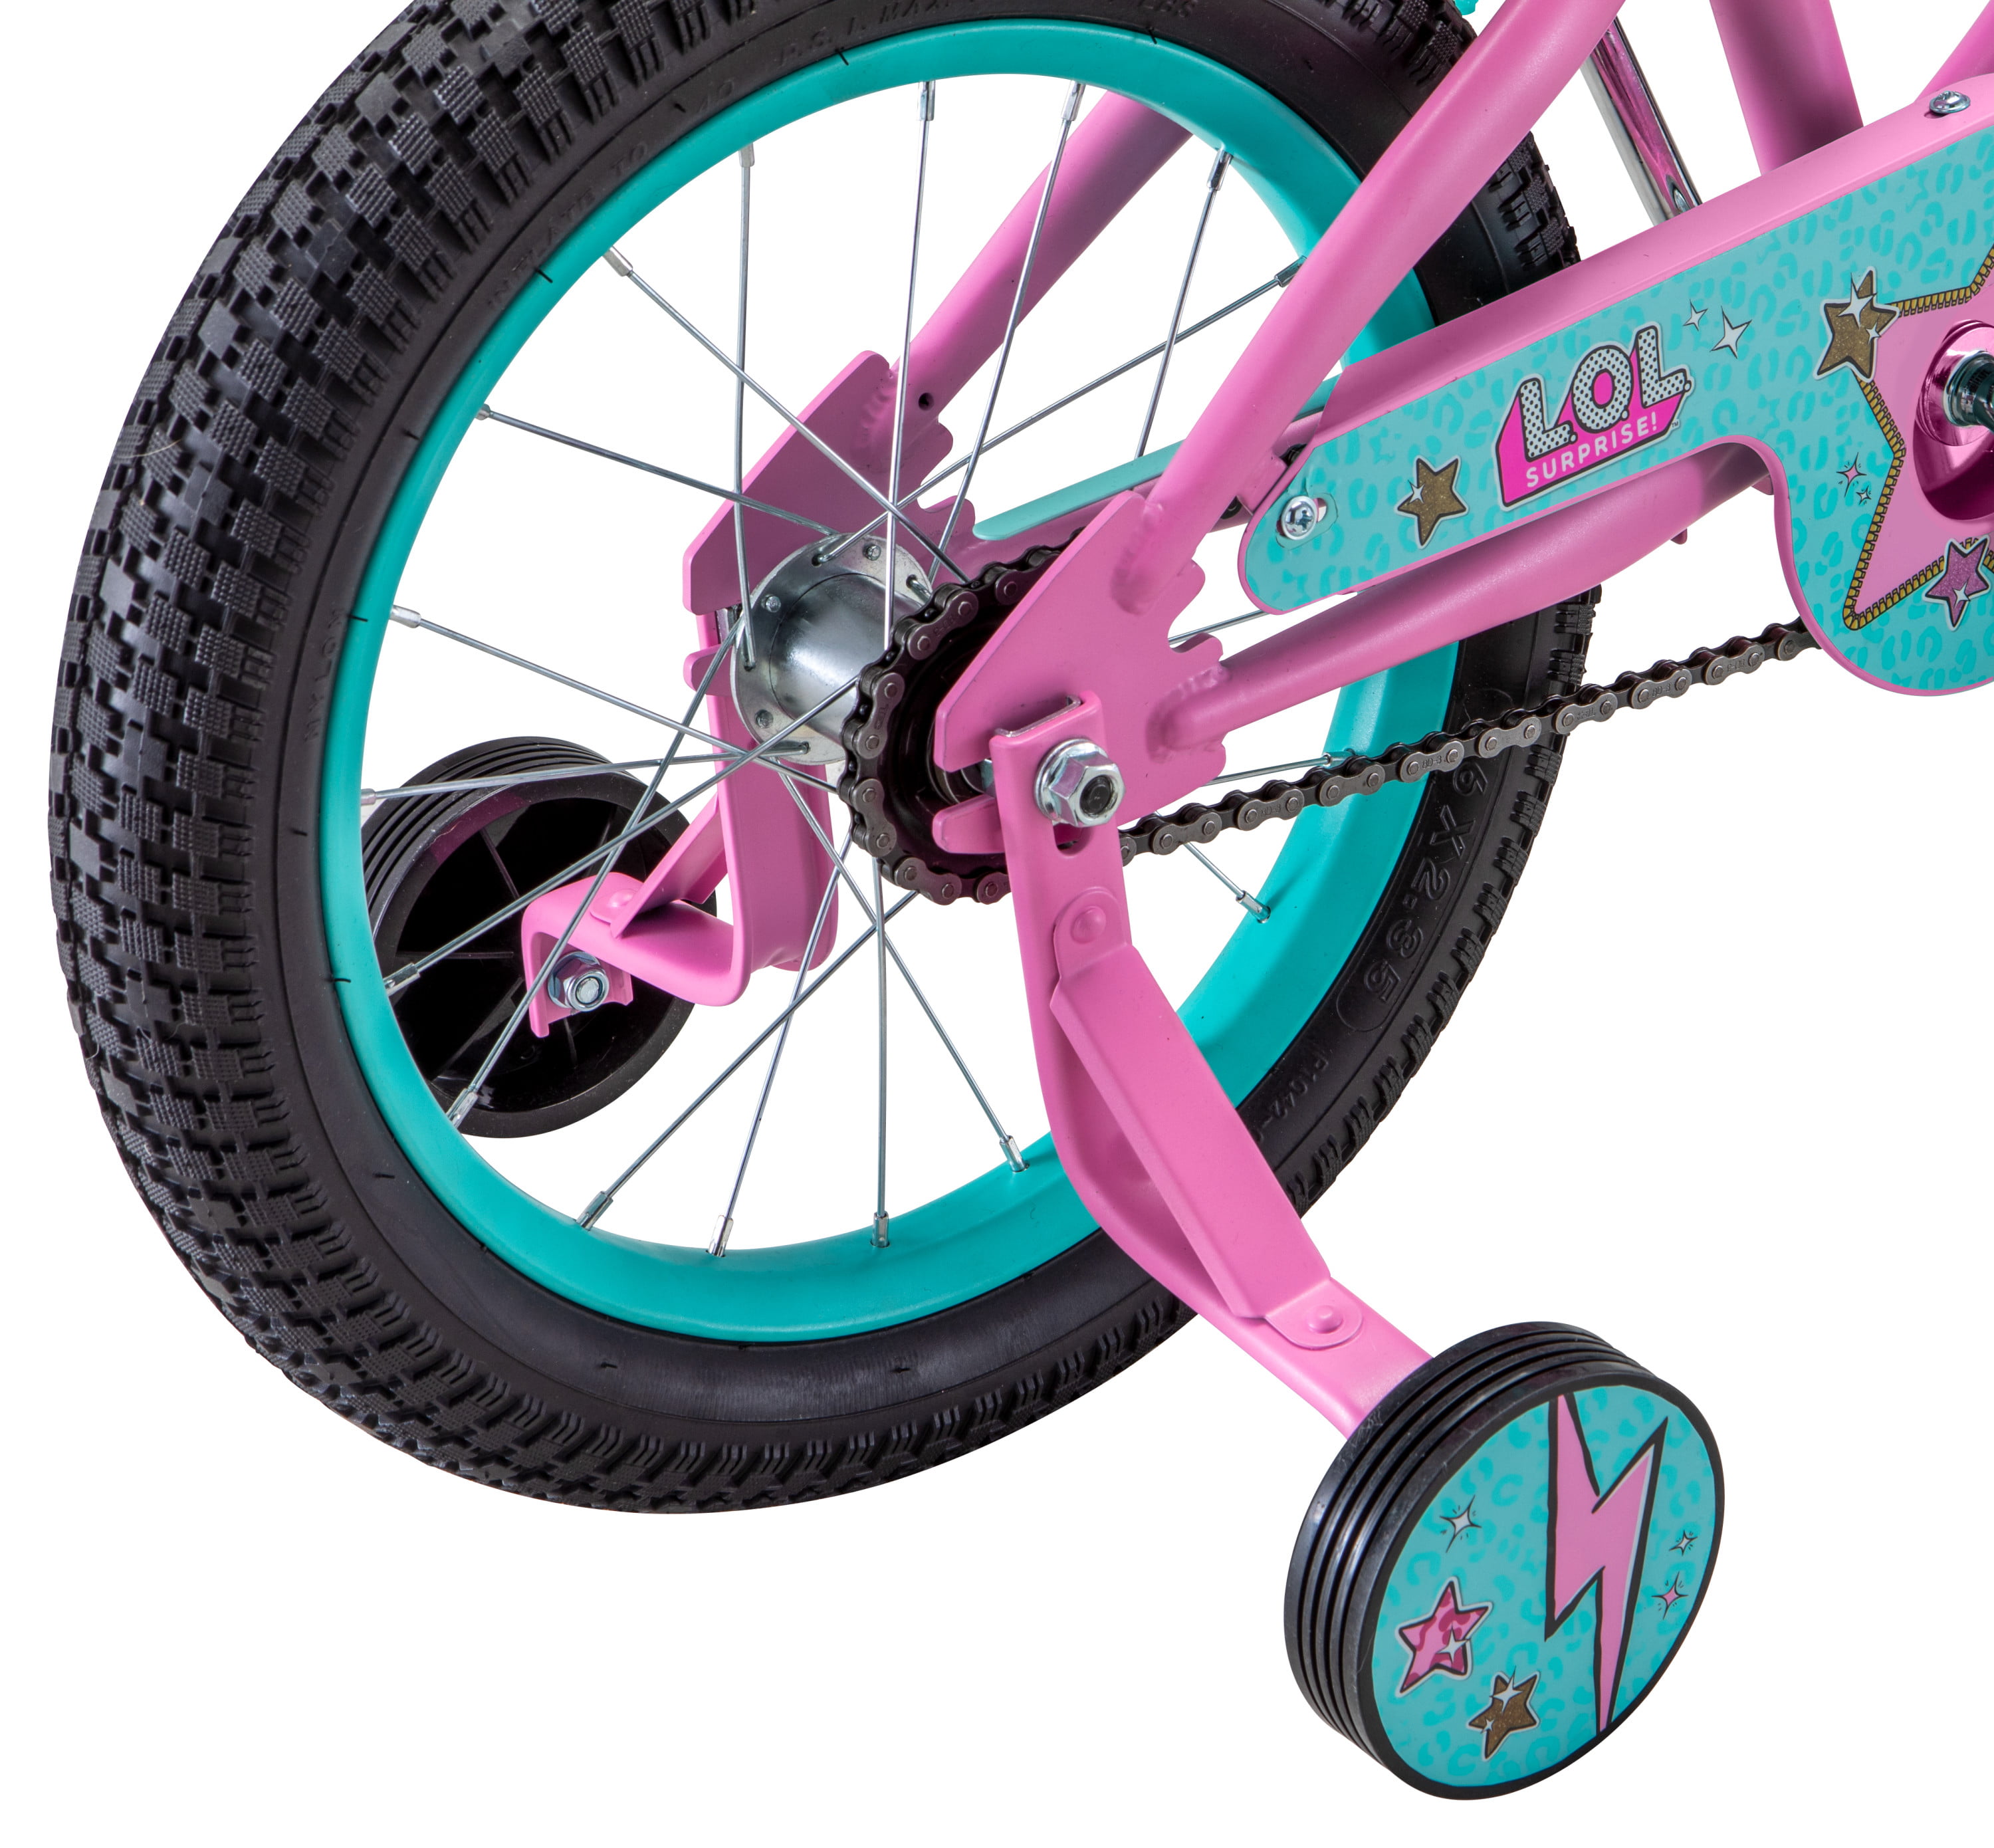 lol doll bike 16 inch